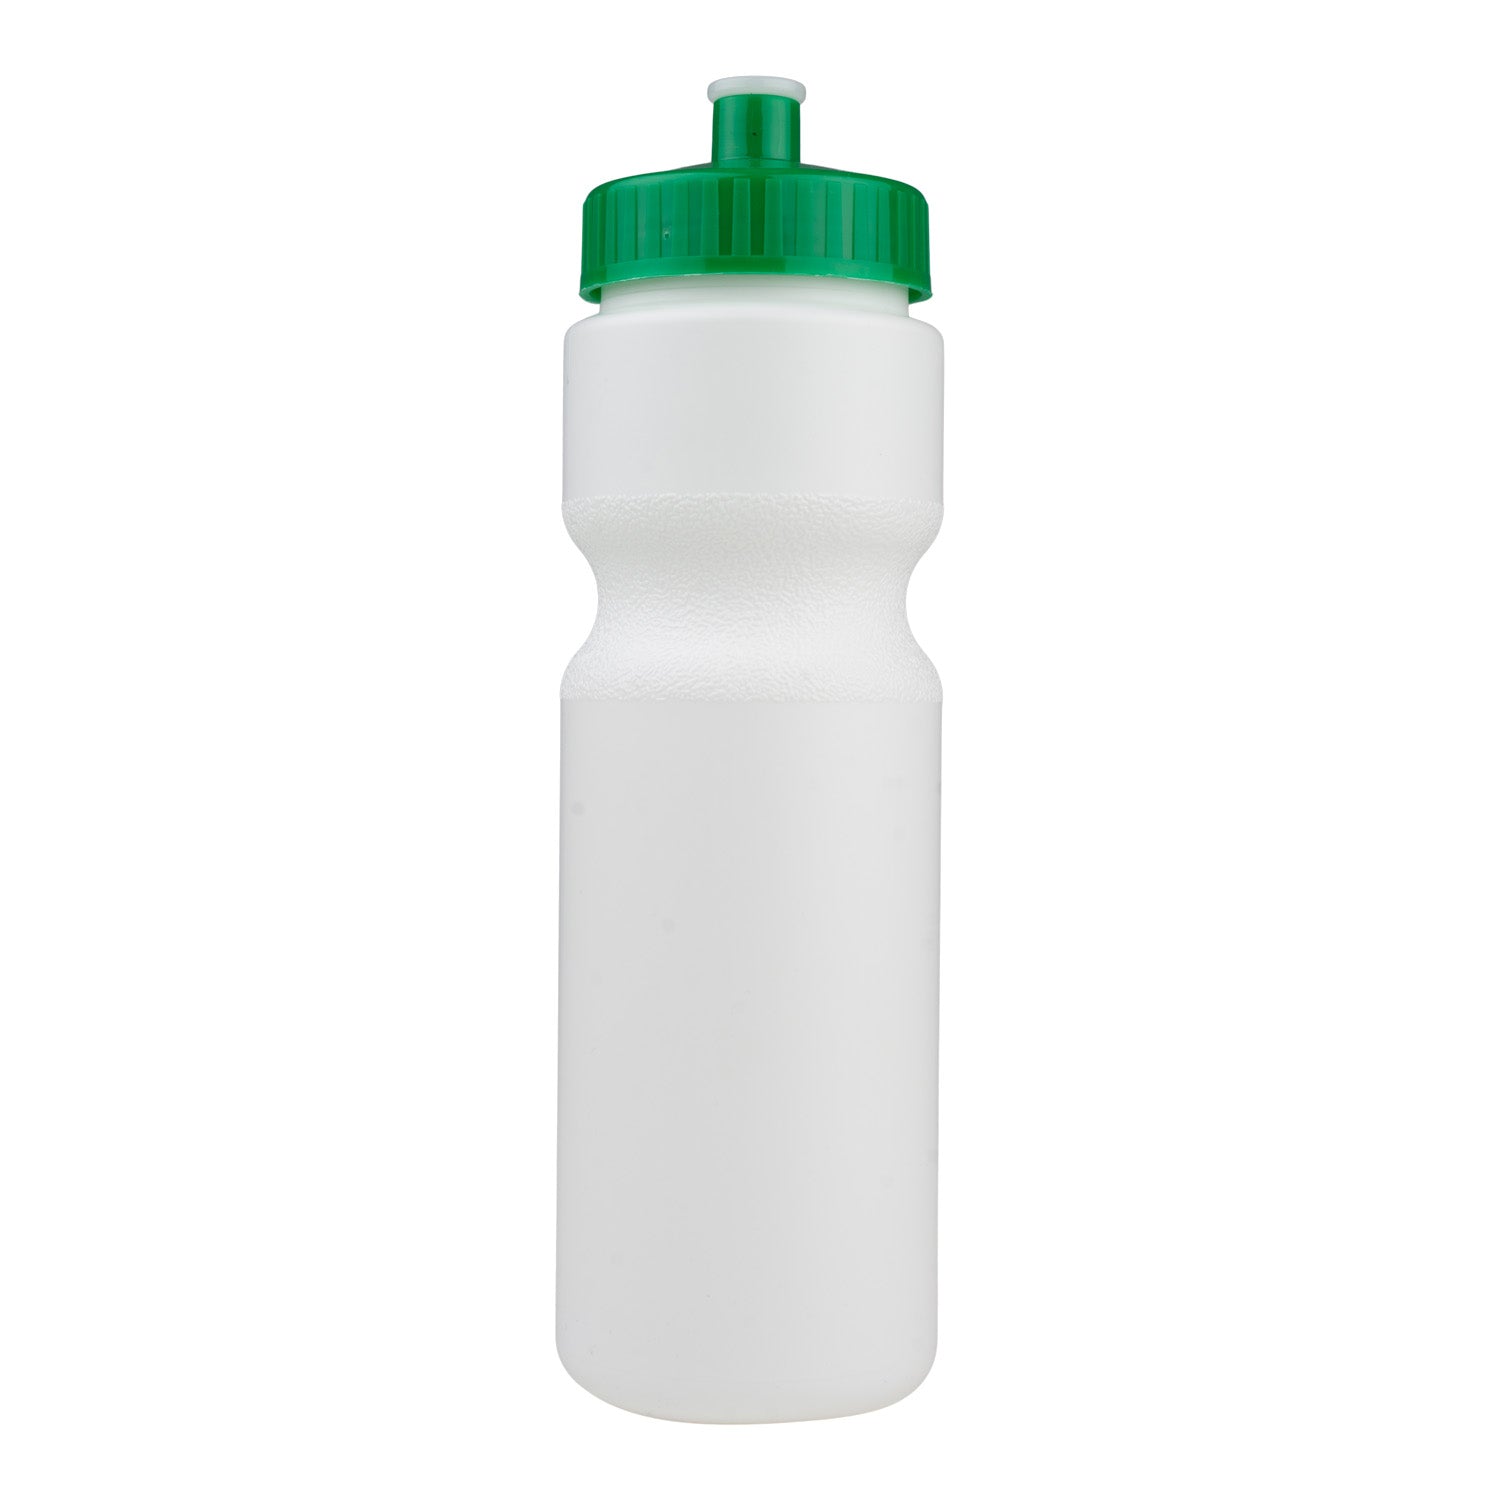 28oz Plastic Water Bottle